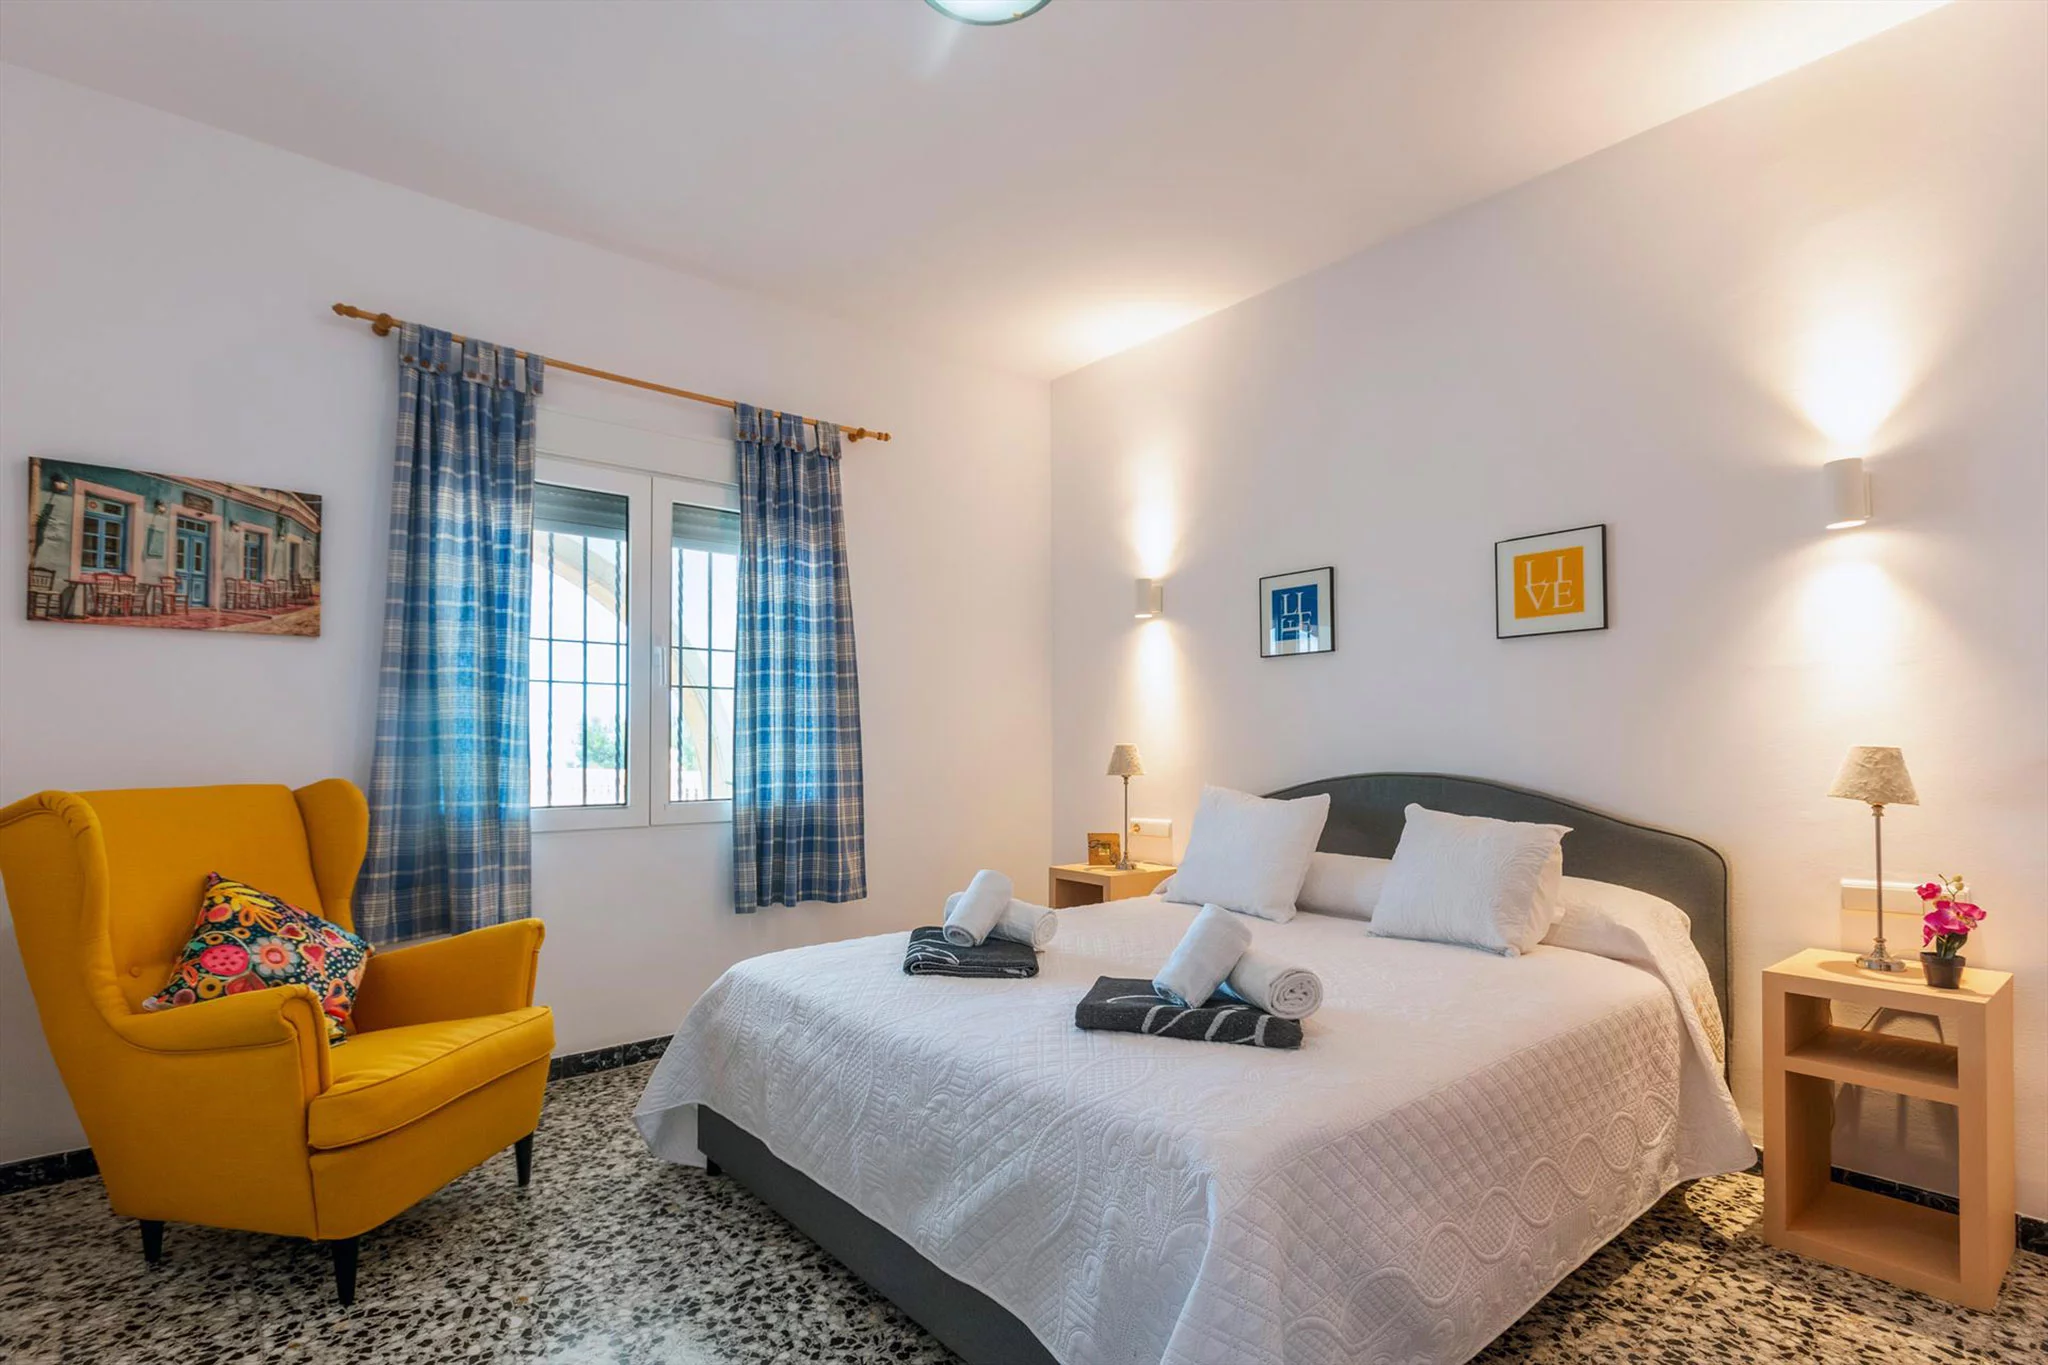 Dormitorio en una casa de vacaciones para ocho personas en Dénia – Aguila Rent a Villa